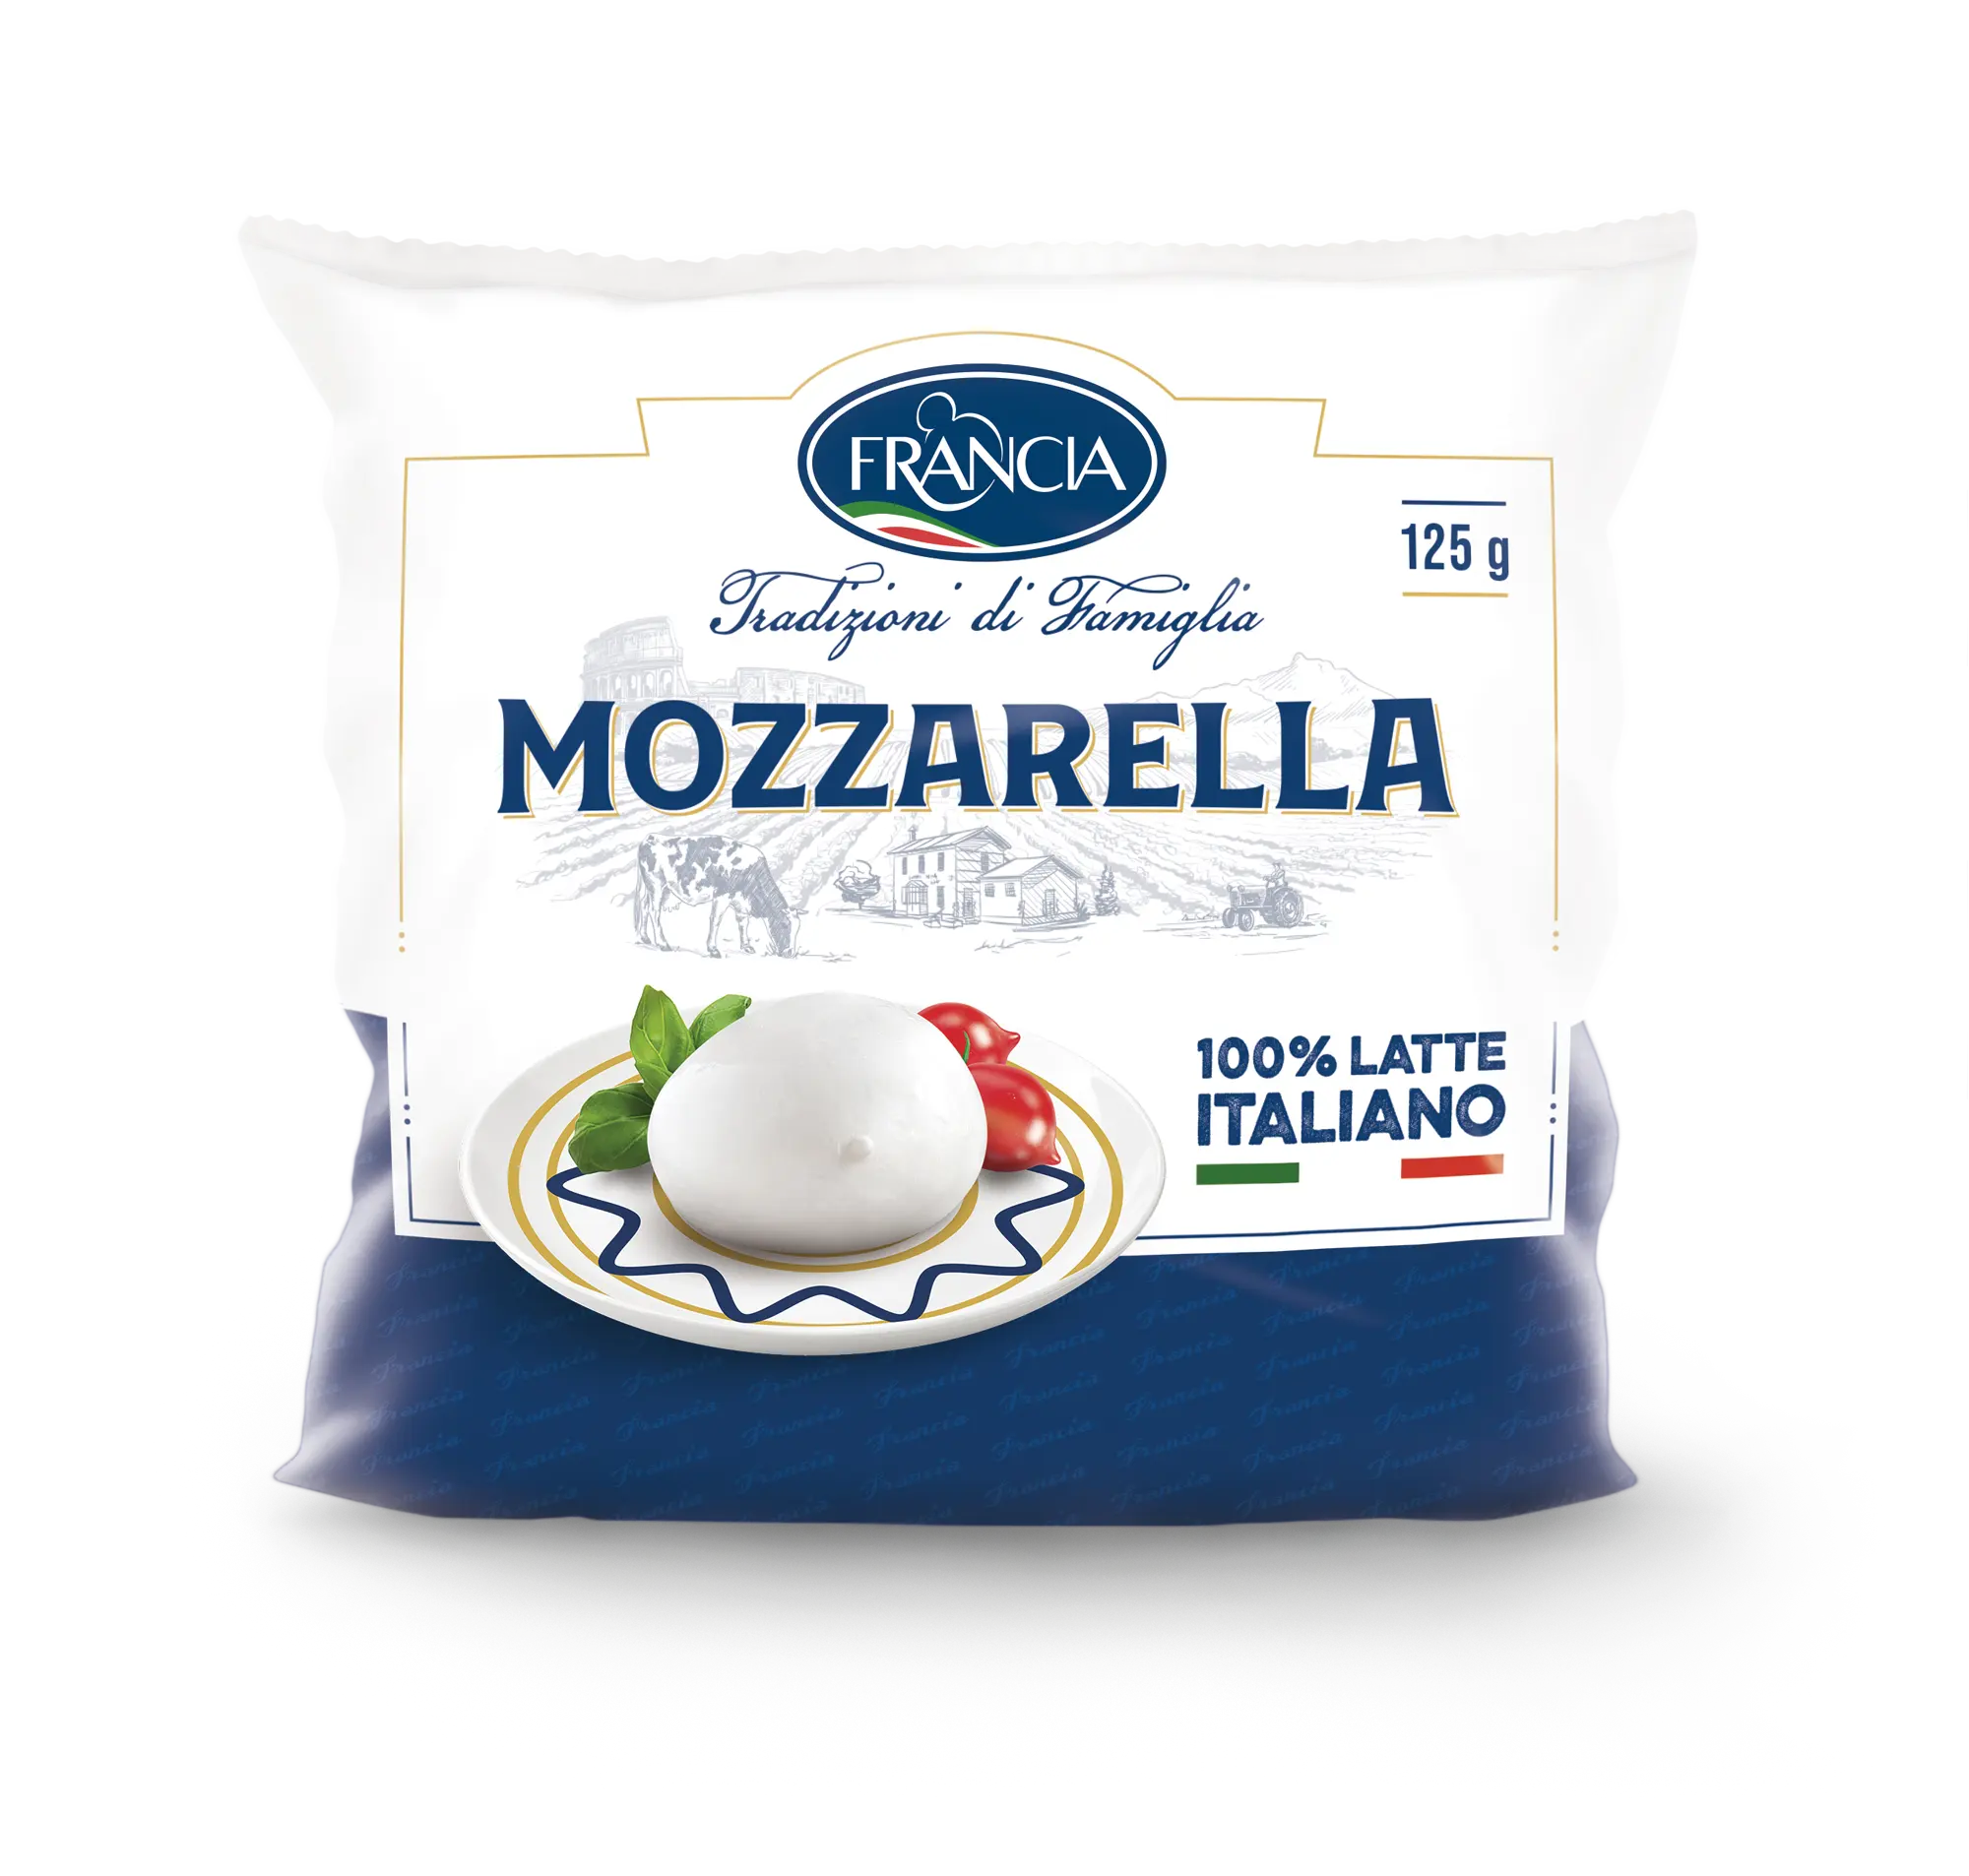 Fromage mozzarella italien d'excellente qualité 125 gr Produits laitiers Fromage frais fabriqué en Italie pour l'exportation